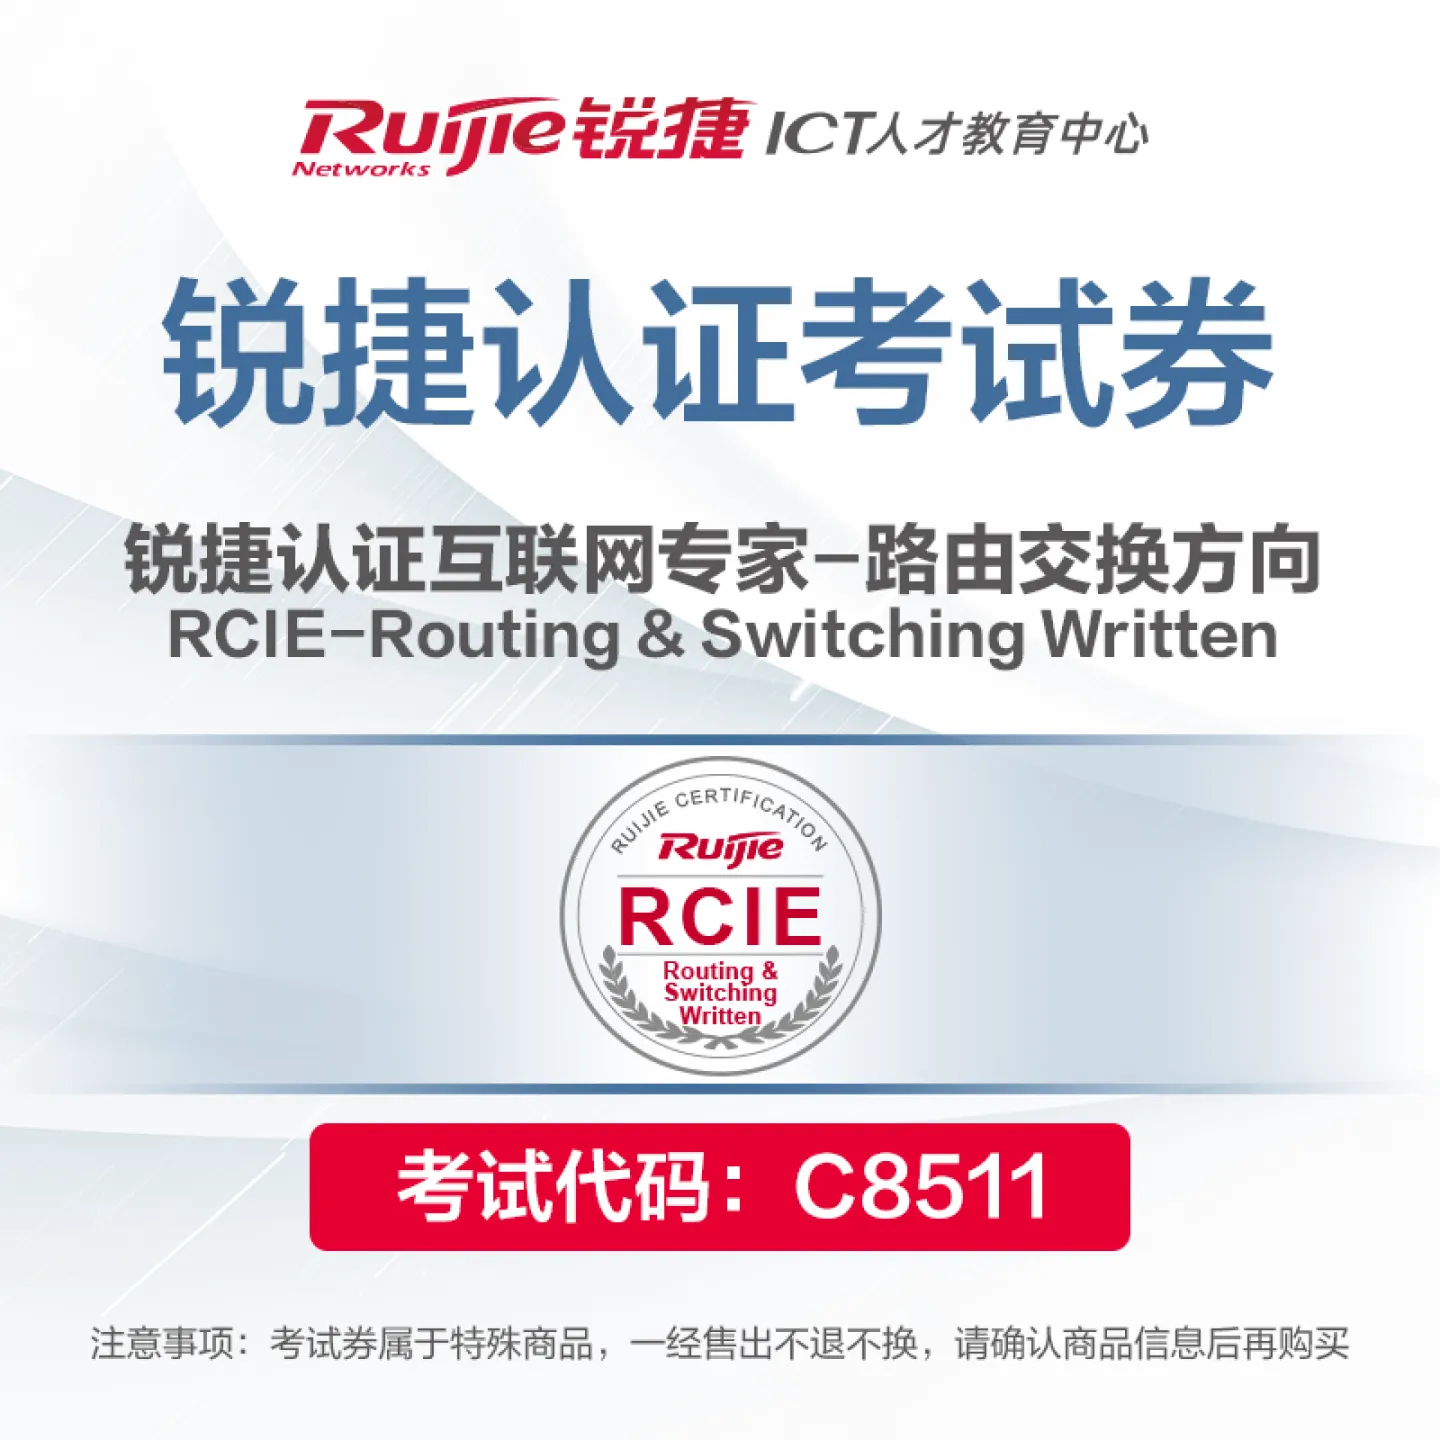 ����璇��搞��RCIE-Routing & Switching Written